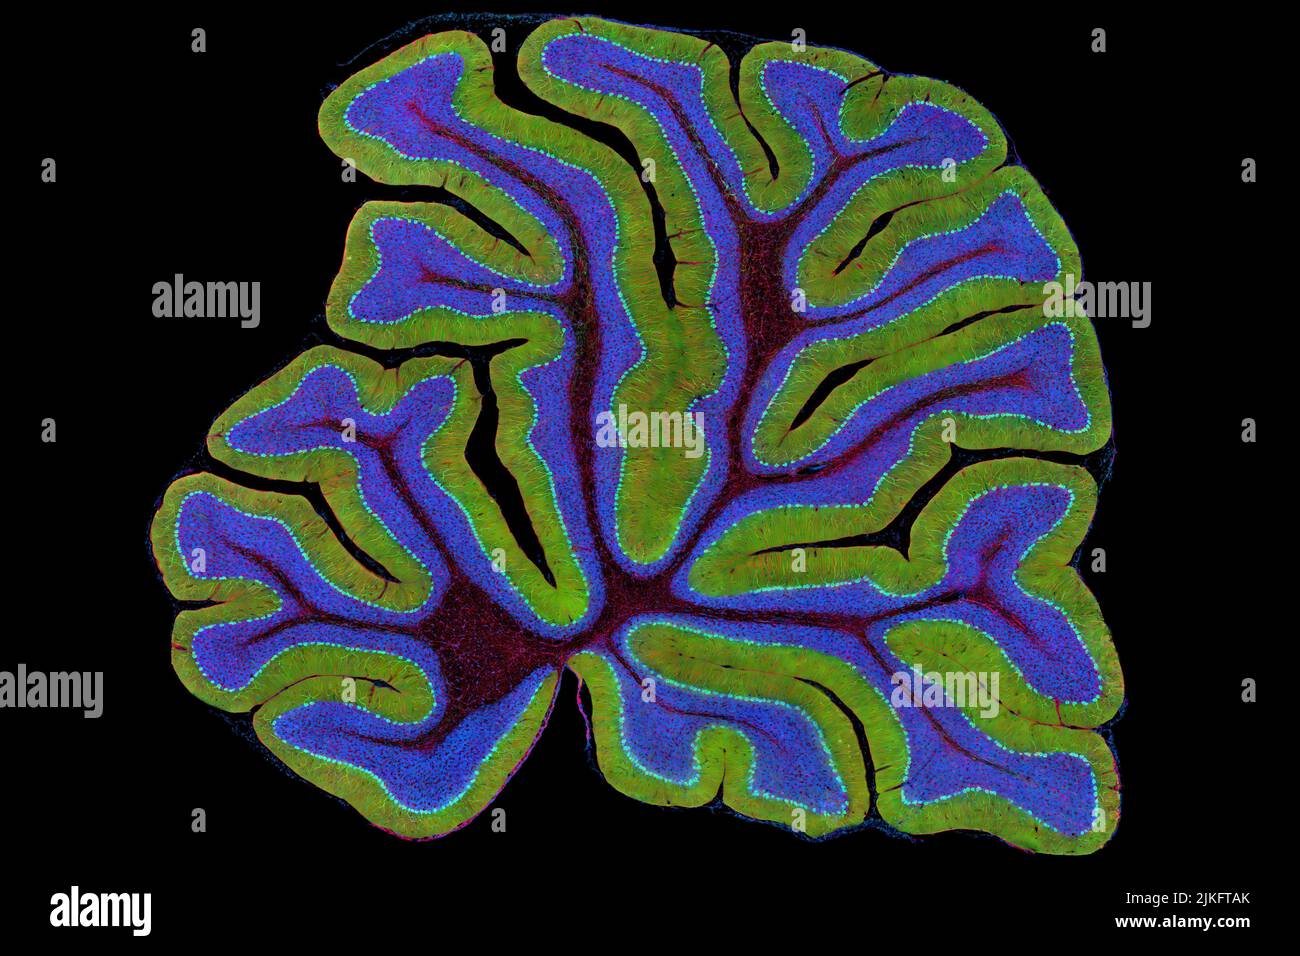 Il cervelletto di un topo è mostrato qui in sezione trasversale. Il cervelletto è il centro di controllo della locomozione del cervello. Ogni volta che sparate un basket, legate la vostra scarpa, o tagliate una cipolla, il cervelletto entra in azione. Situato alla base del cervello, il cervelletto è un singolo strato di tessuto con pieghe profonde come una fisarmonica. Le persone con danni a questa area del cervello spesso hanno difficoltà con l'equilibrio, il coordinamento e le abilità motorie fini. Foto Stock